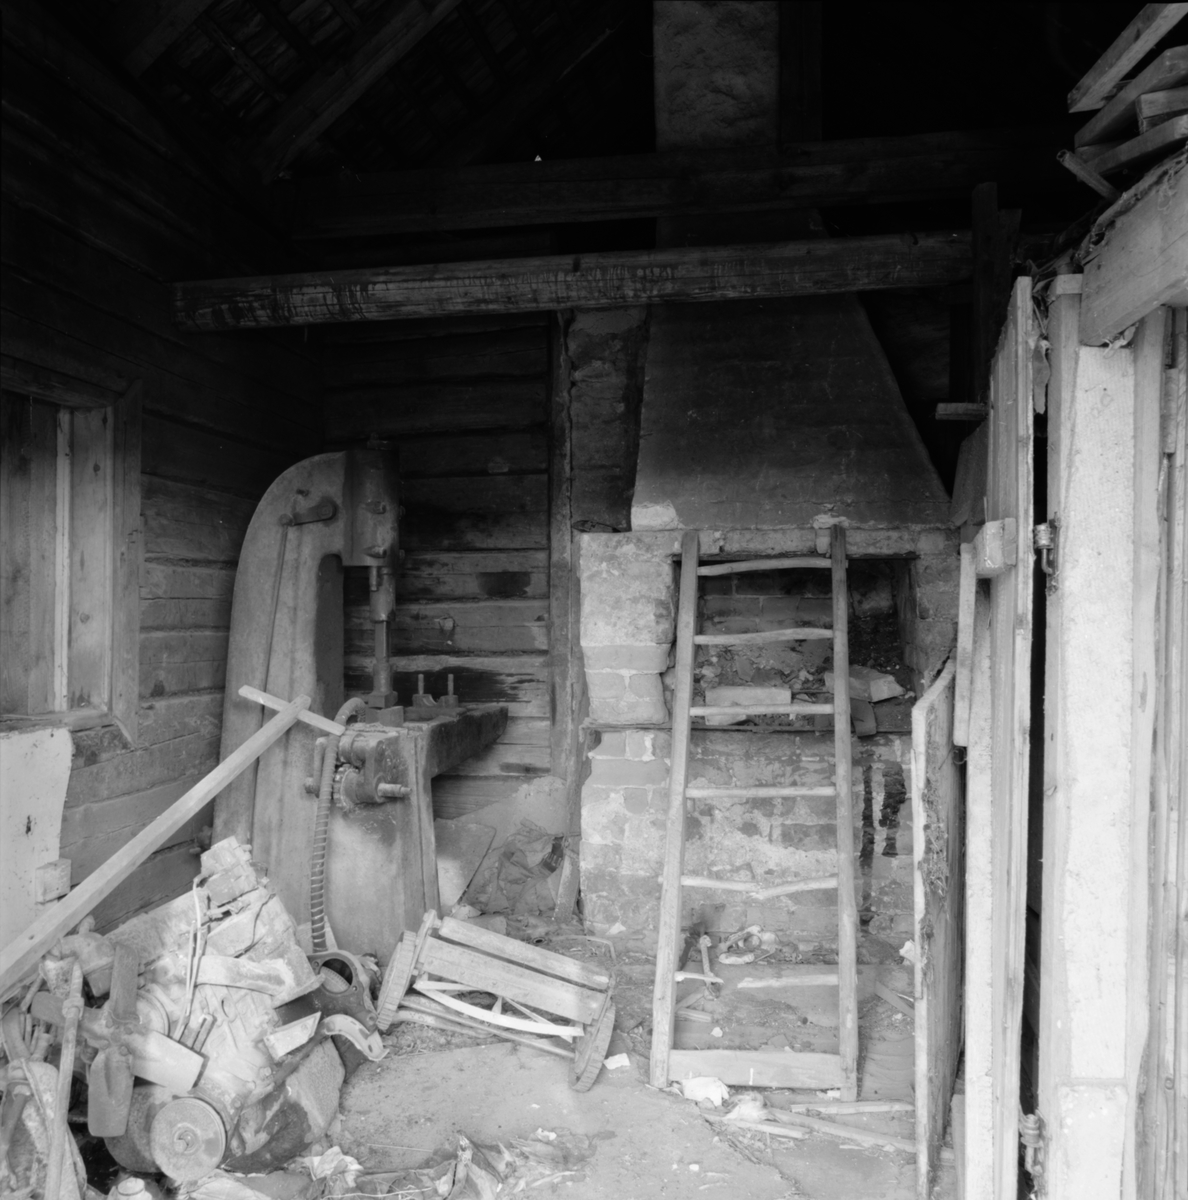 Klensmedja på baksidan av timrad gruvstuga från senare delen av 1800-talet intill Konstängsgruvan, Dannemora Gruvor AB, Dannemora, Uppland maj 1991